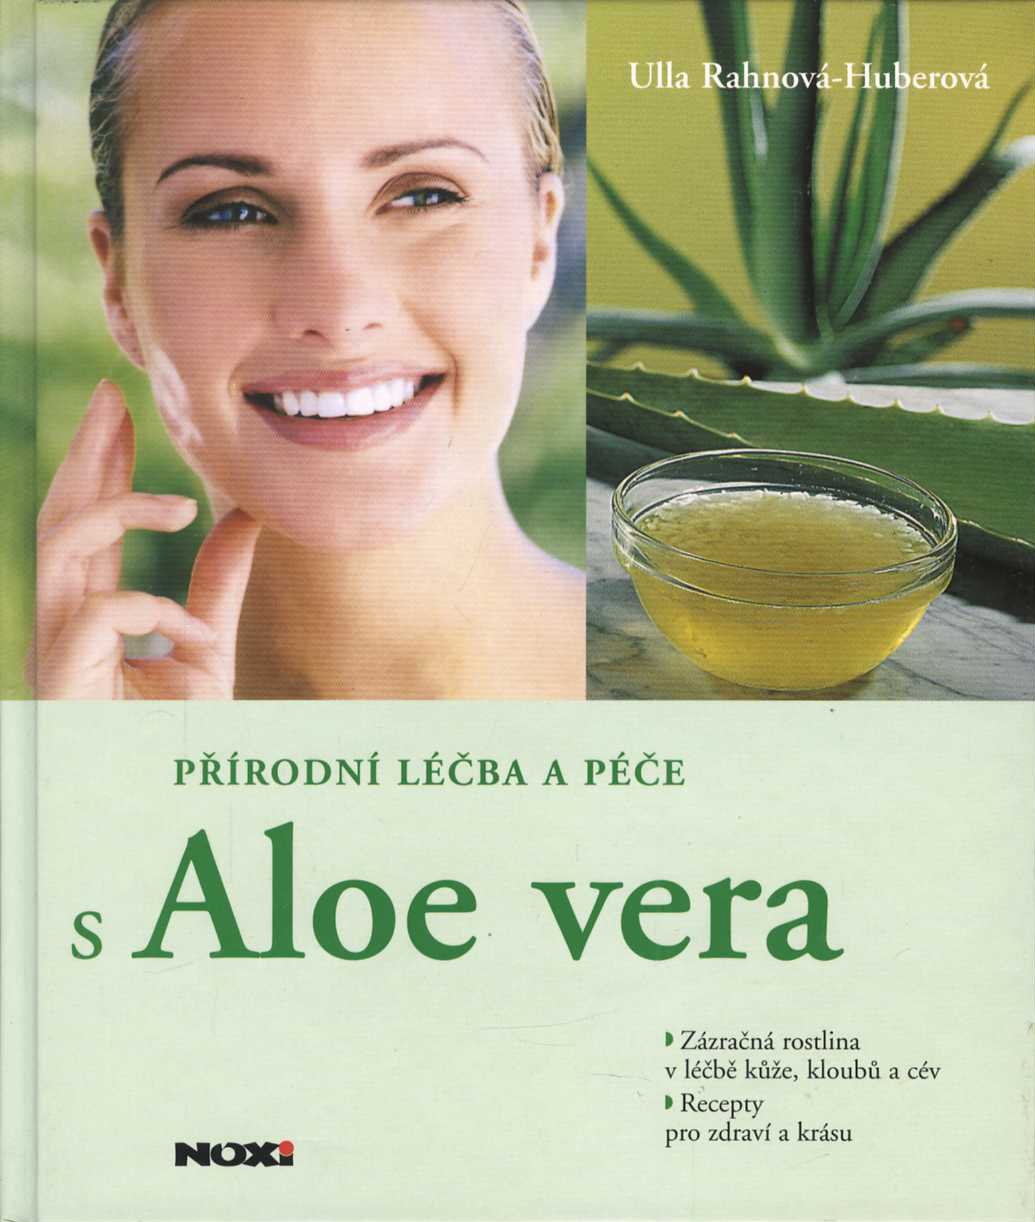 Přírodní léčba a péče s Aloe vera (Ulla Rhanová-Hubertová)